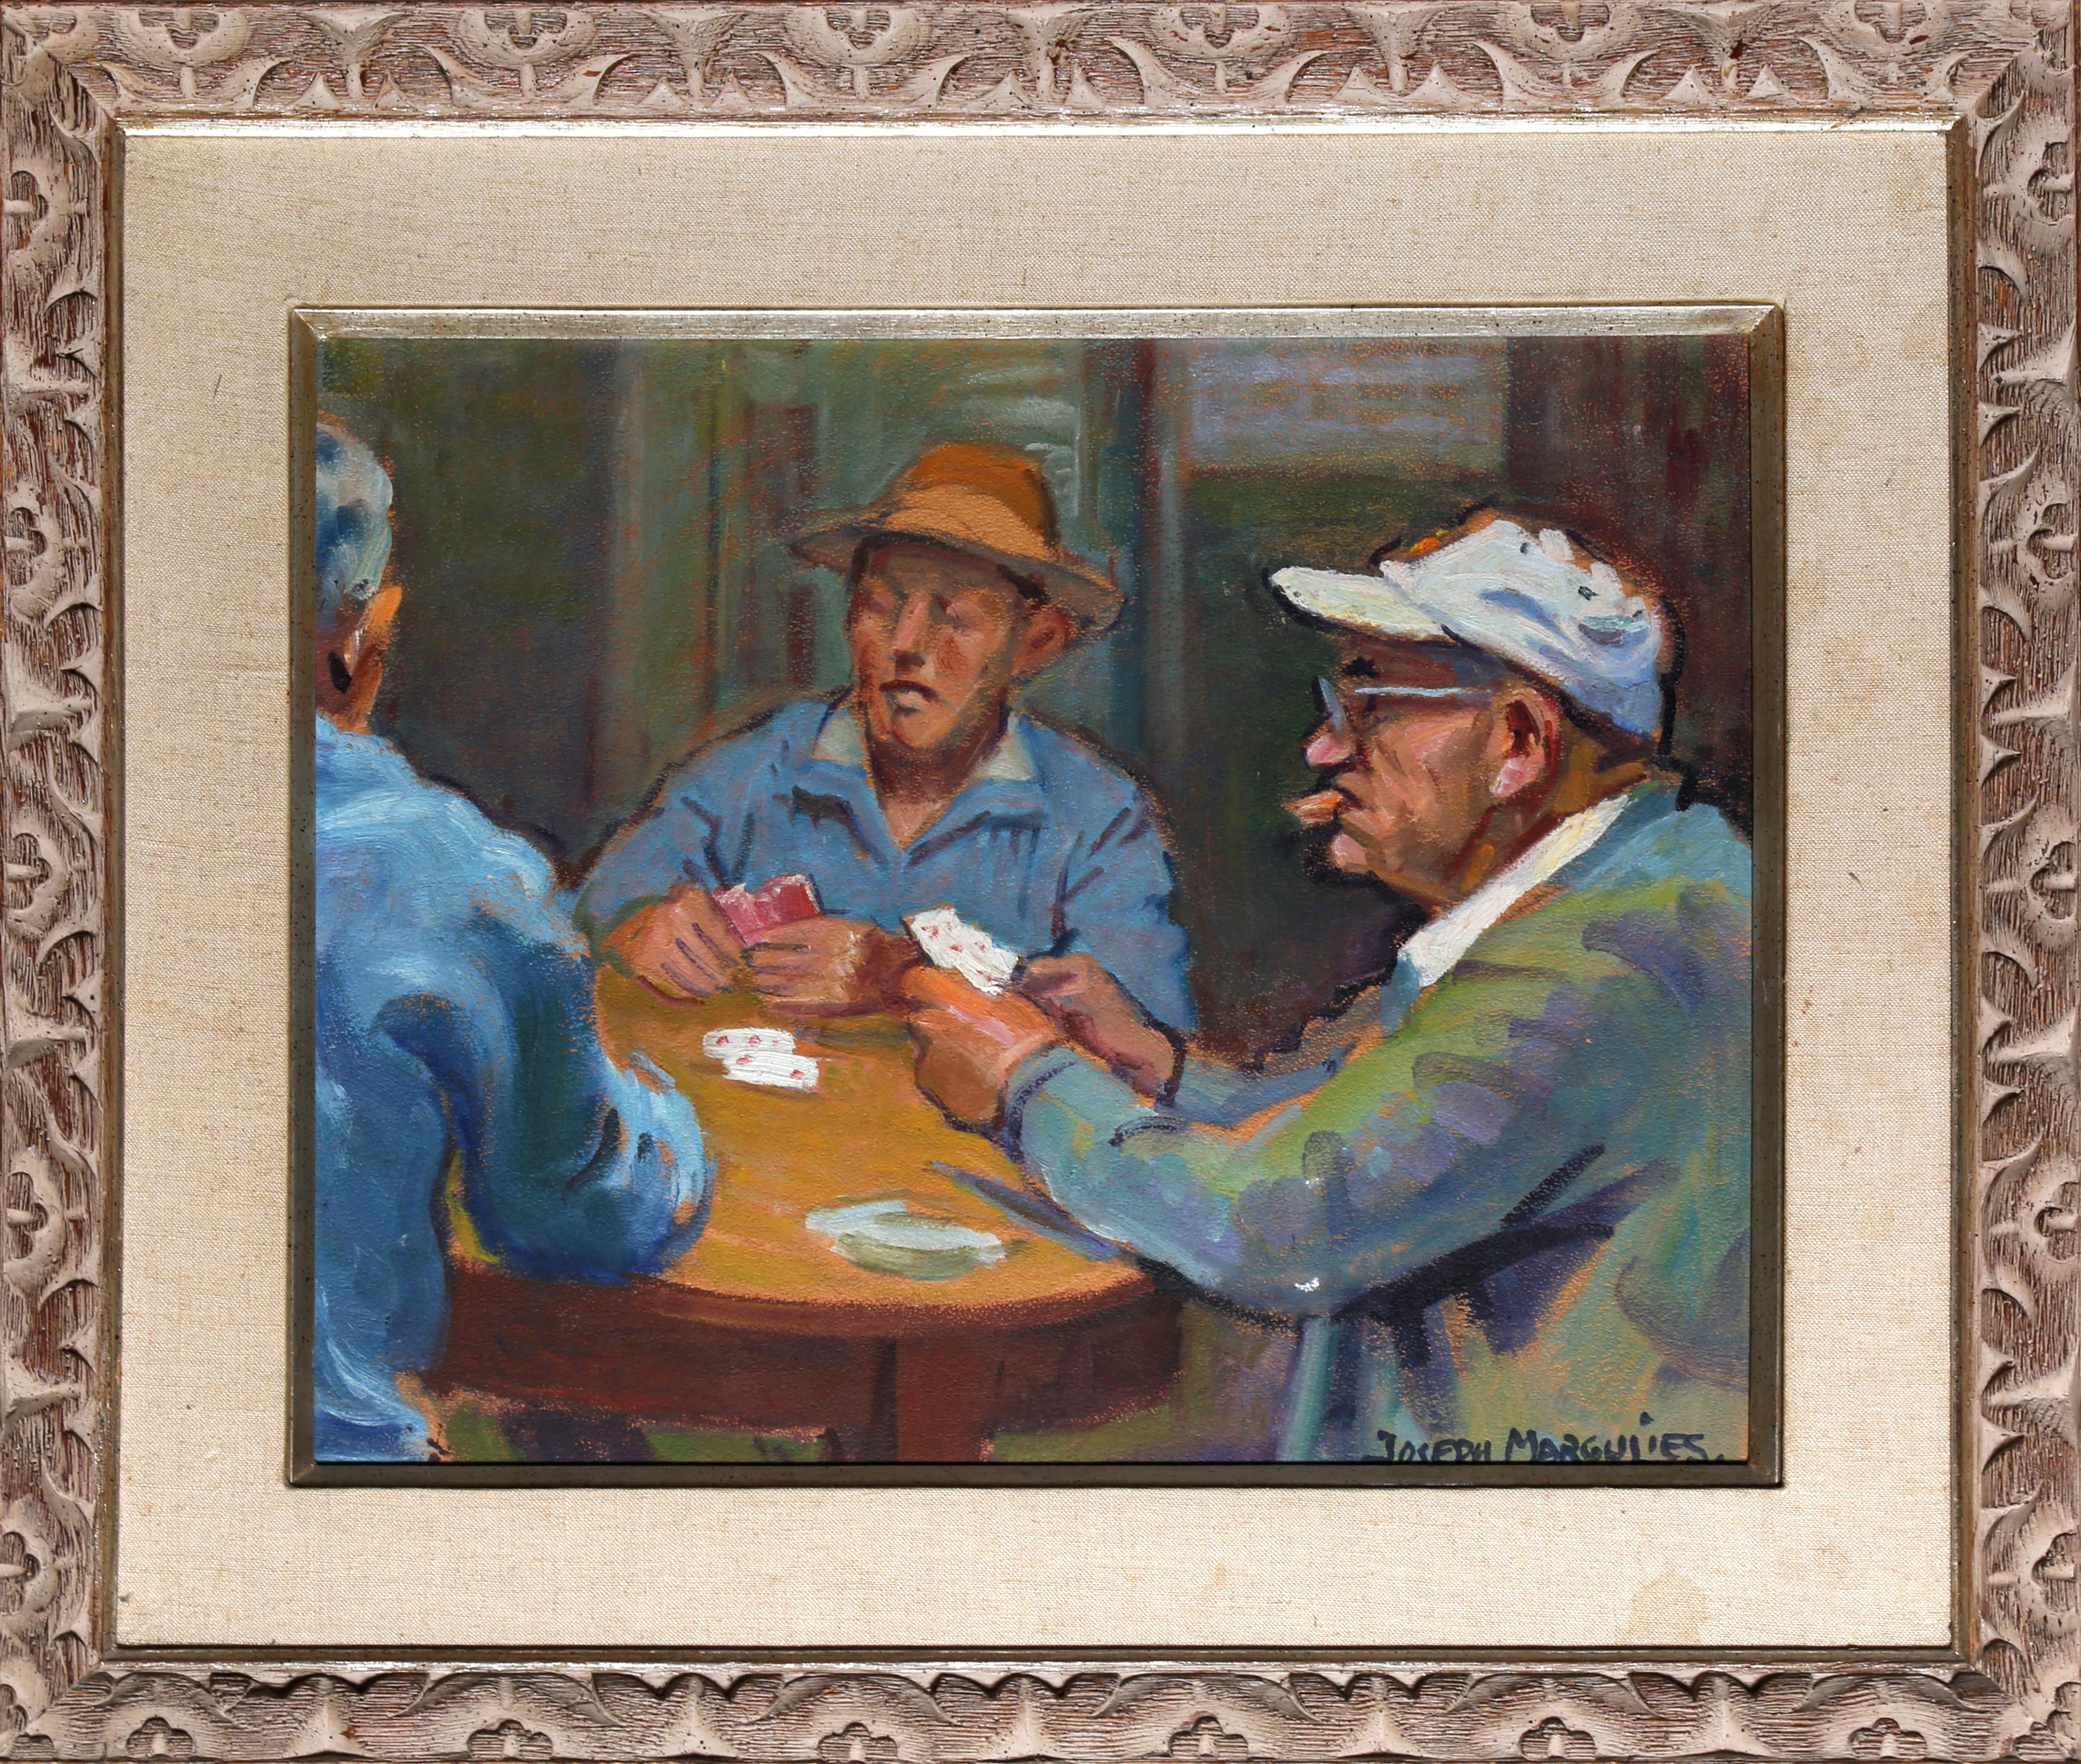 Männer beim Kartenspielen, Gemälde von Joseph Margulies